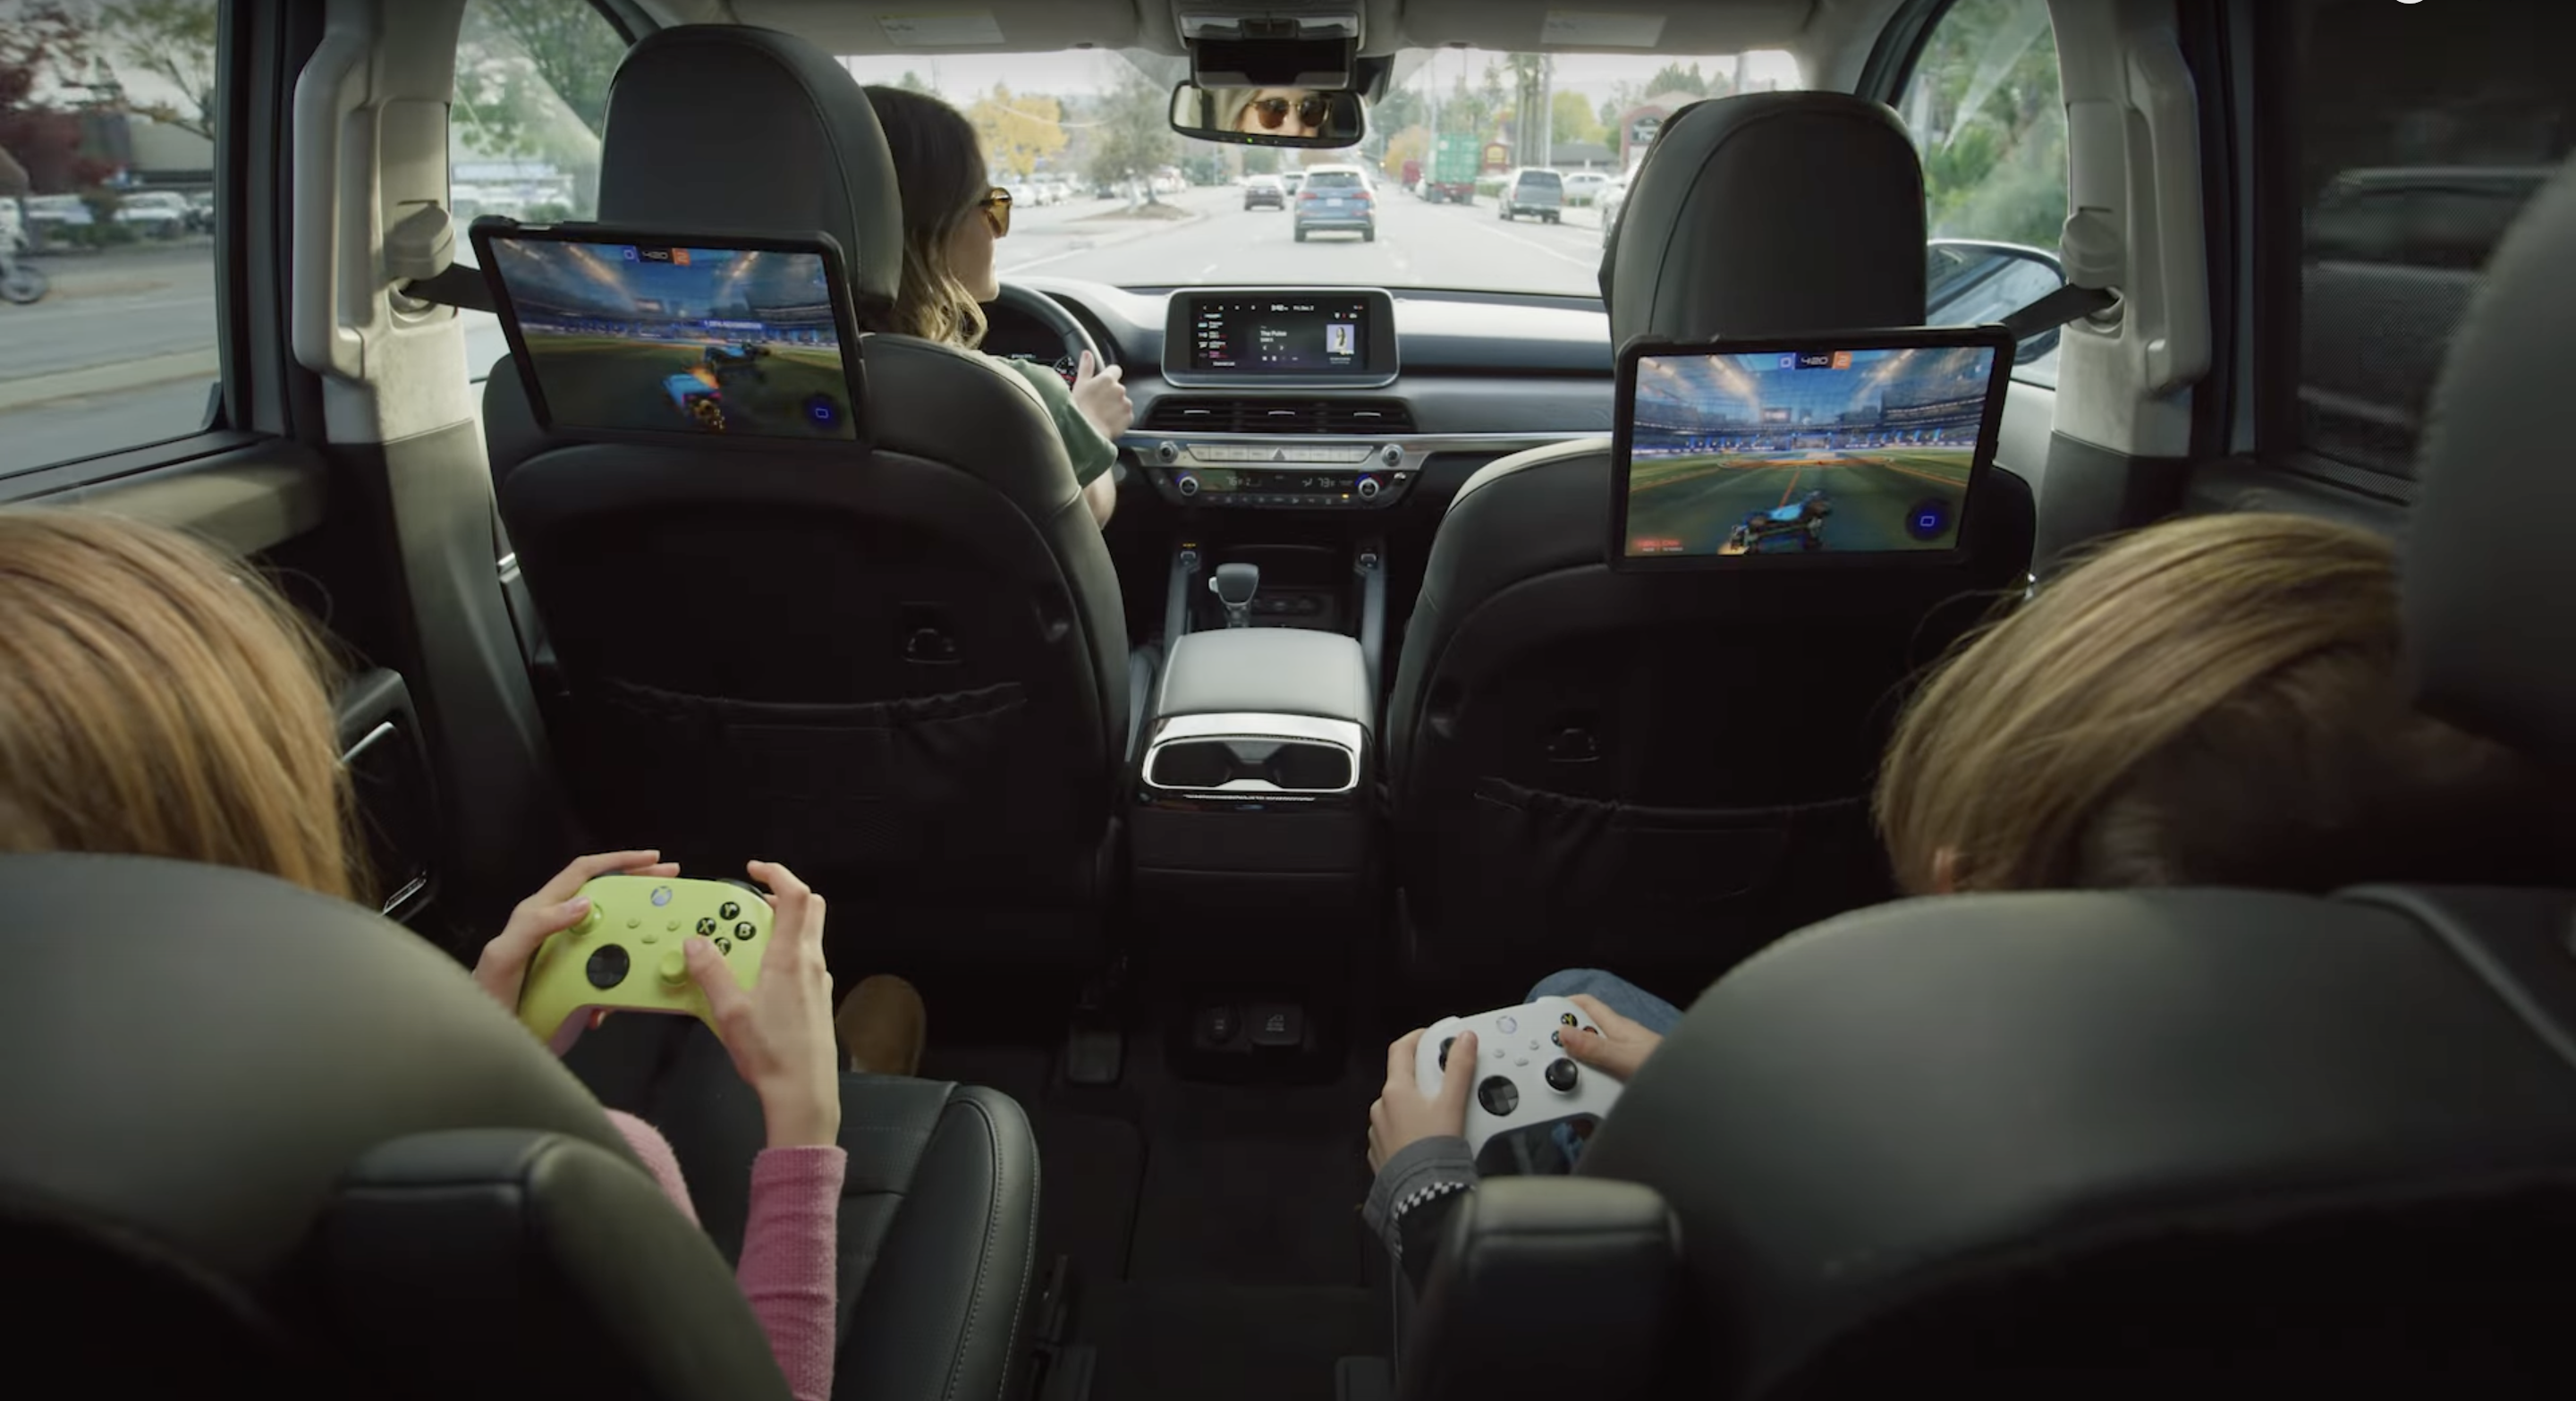 Samochody Polestar, BYD, Hyundai, Kia i Genesis z systemem Android Automotive na pokładzie otrzymają wsparcie dla usługi gier w chmurze Nvidia GeForce Now